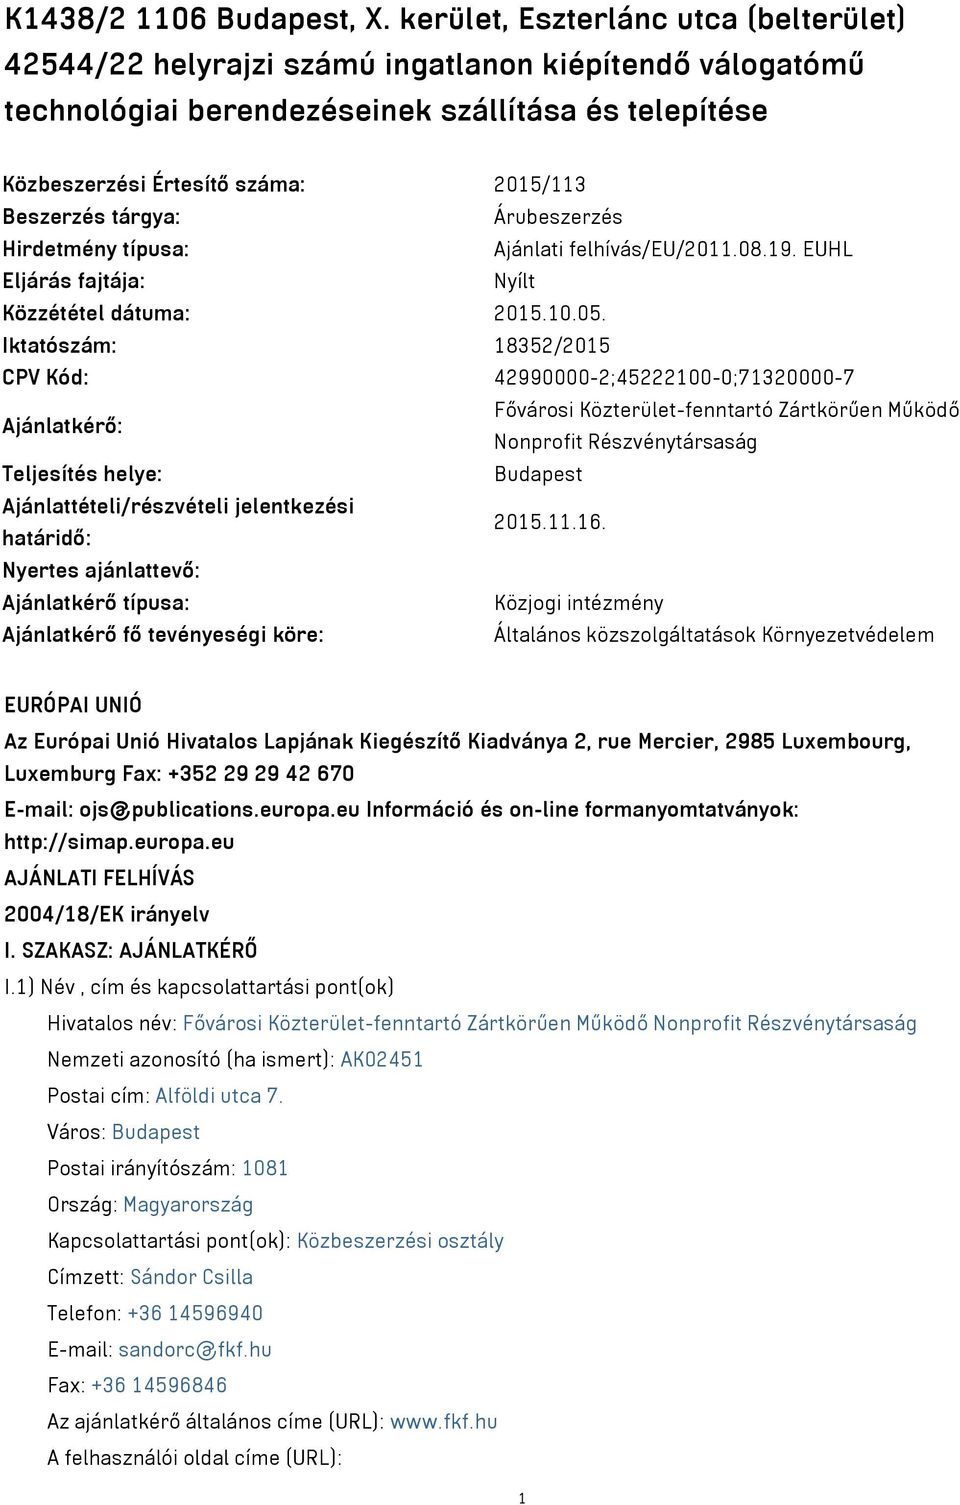 tárgya: Árubeszerzés Hirdetmény típusa: Ajánlati felhívás/eu/2011.08.19. EUHL Eljárás fajtája: Nyílt Közzététel dátuma: 2015.10.05.